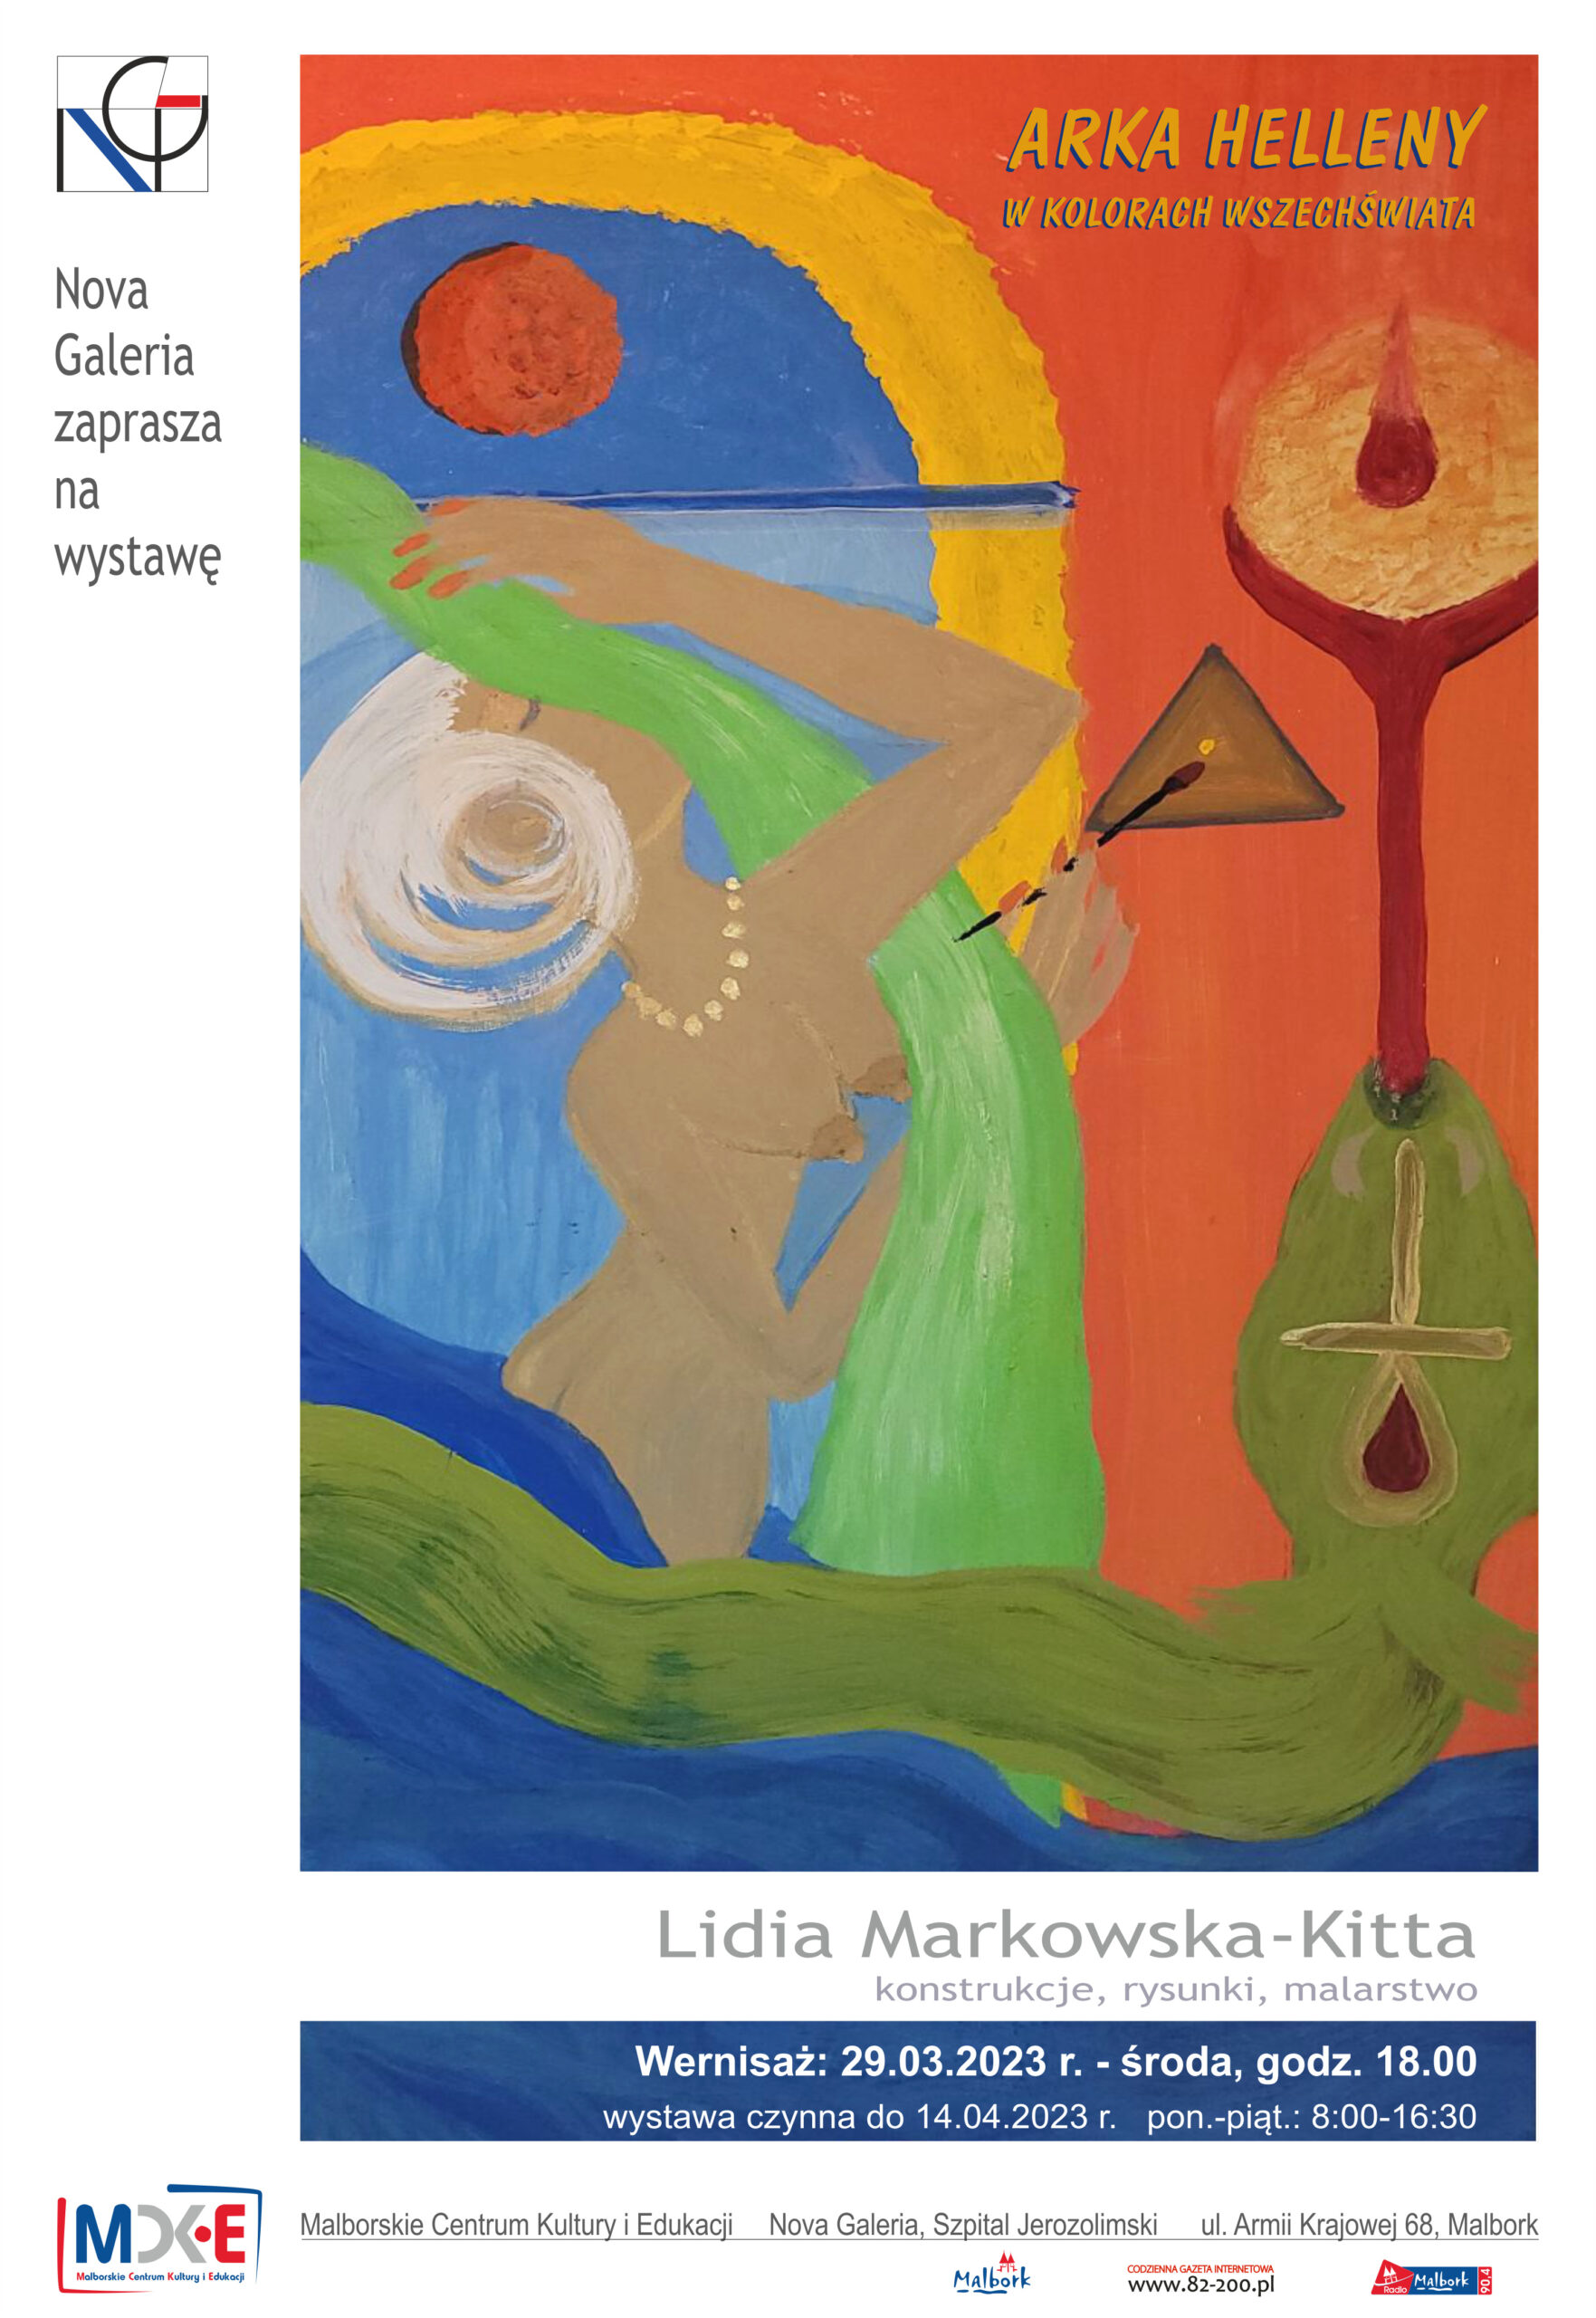 Konstrukcje, rysunki, malarstwo Lidia Markowska-Kitta